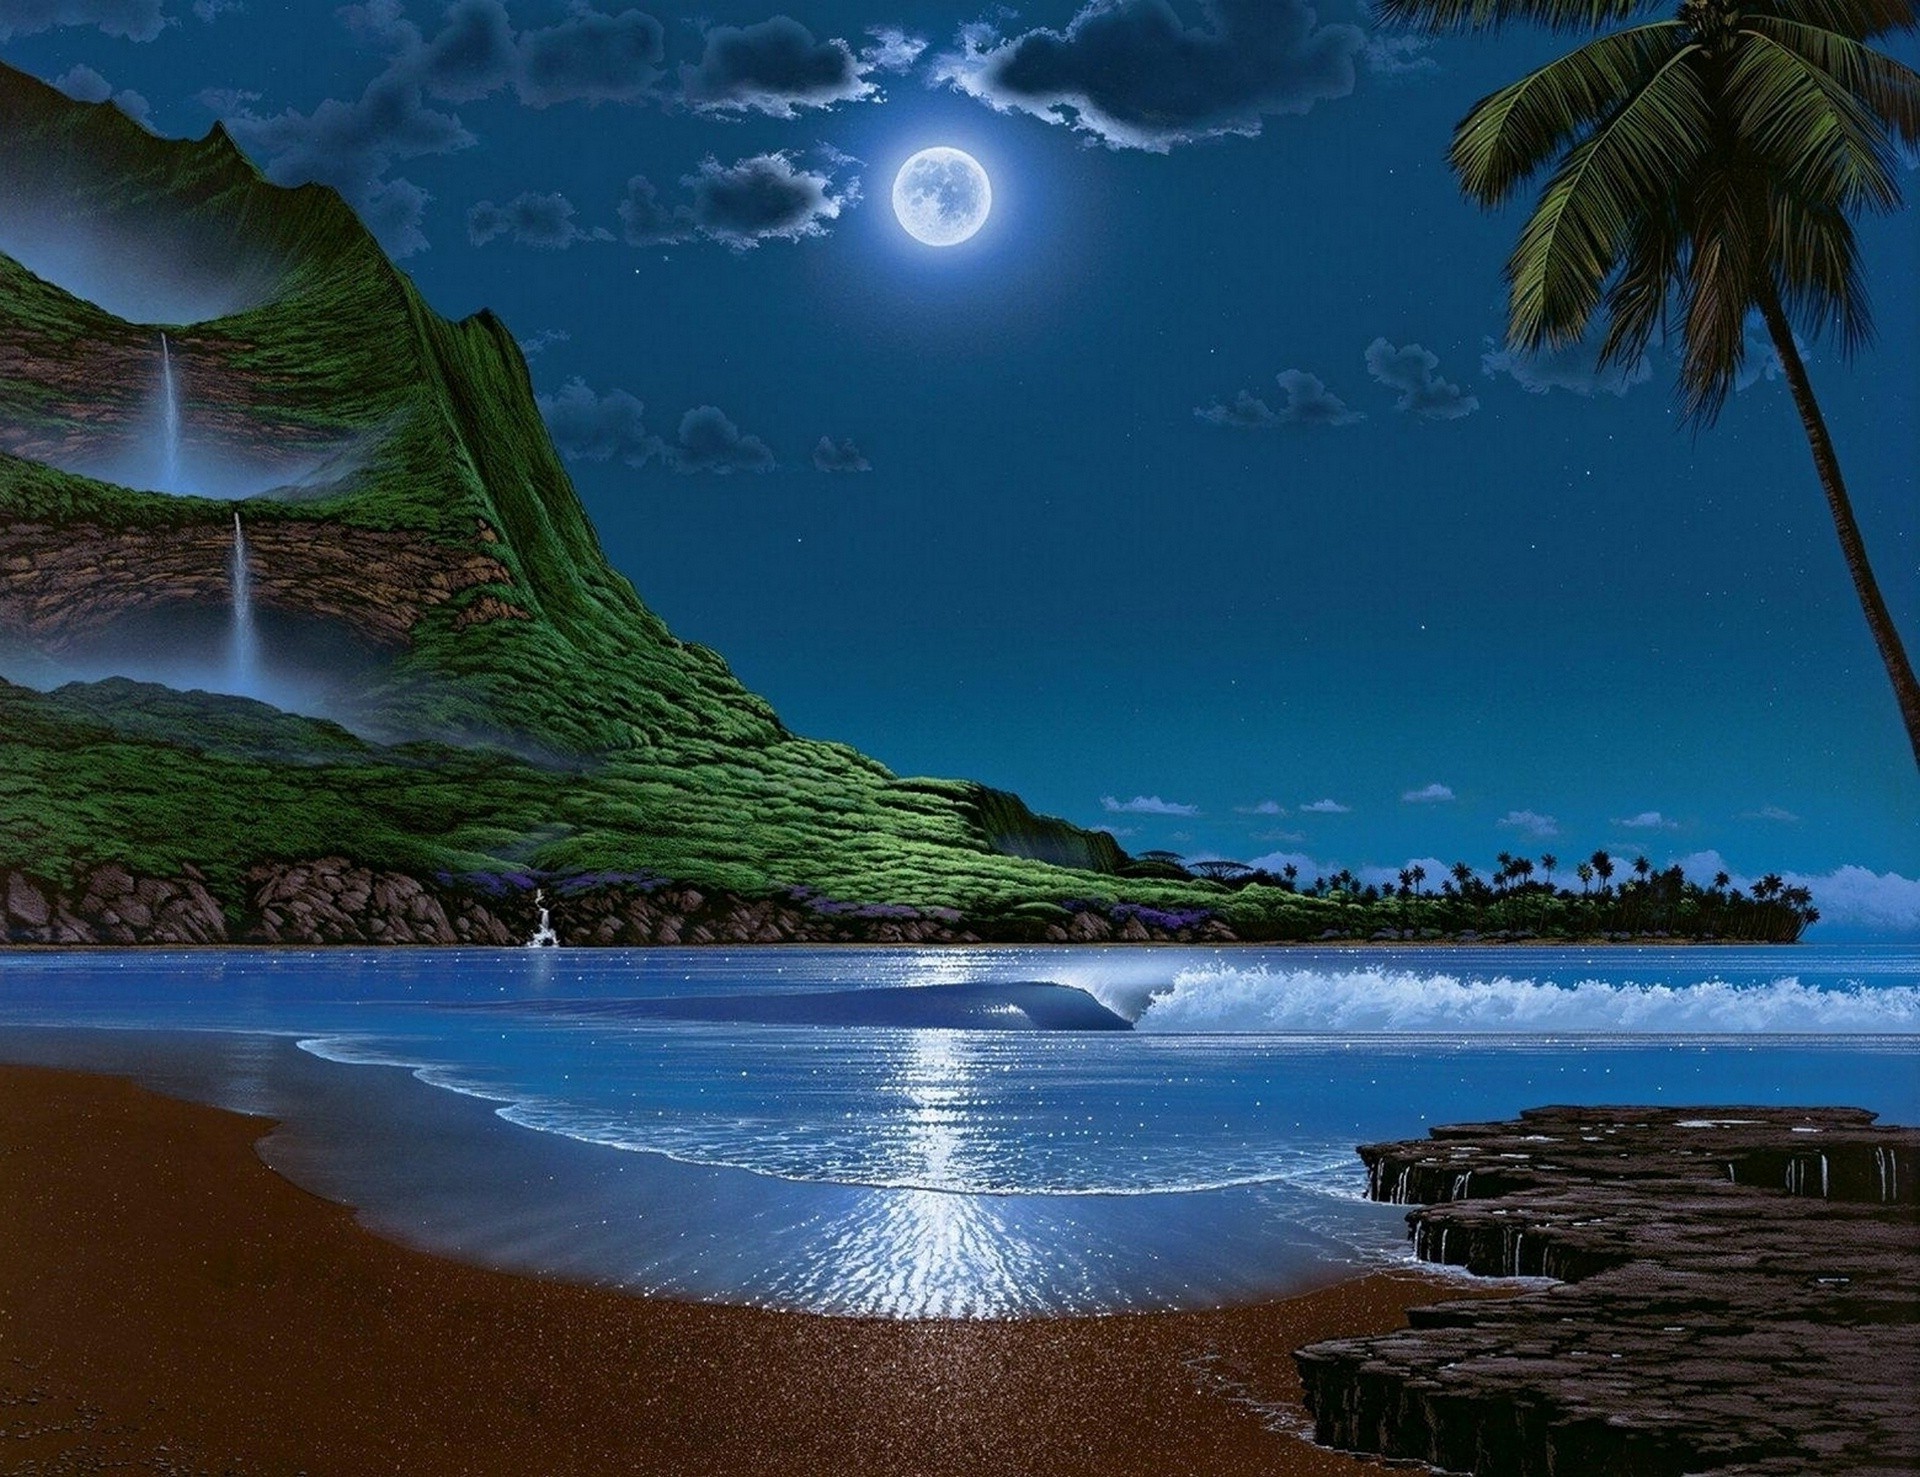 ночь вечер сумерки вечерние сумерки моря пляж воды путешествия океан остров море залив тропический пейзаж песок пейзаж отпуск курорт небо идиллия